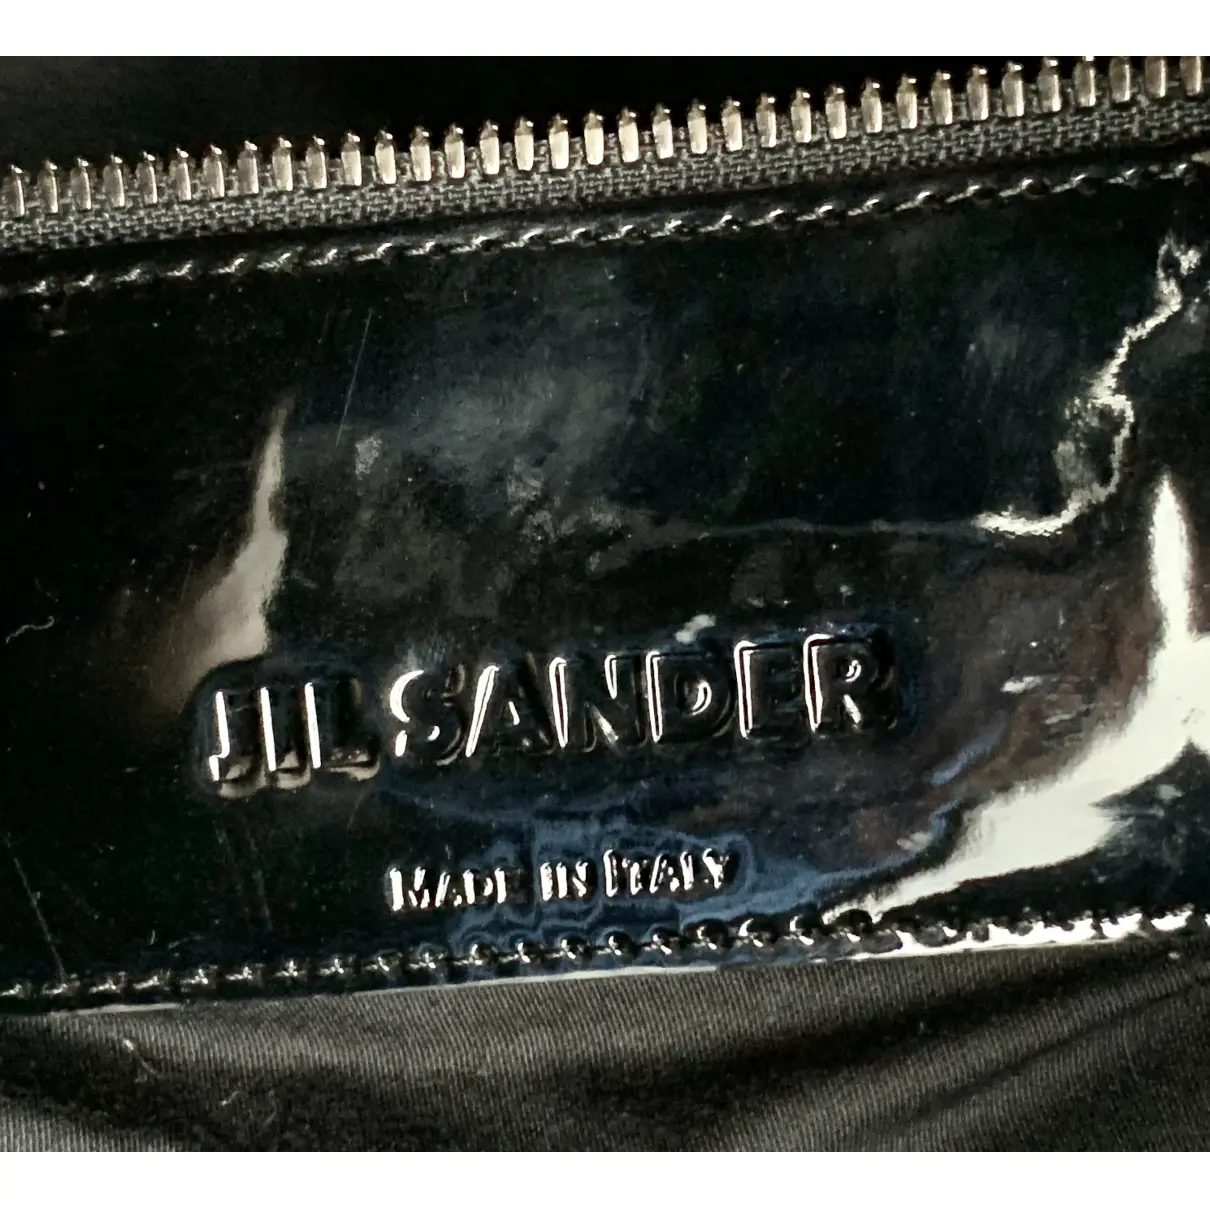 Buy Jil Sander Patent leather bag online - Vintage